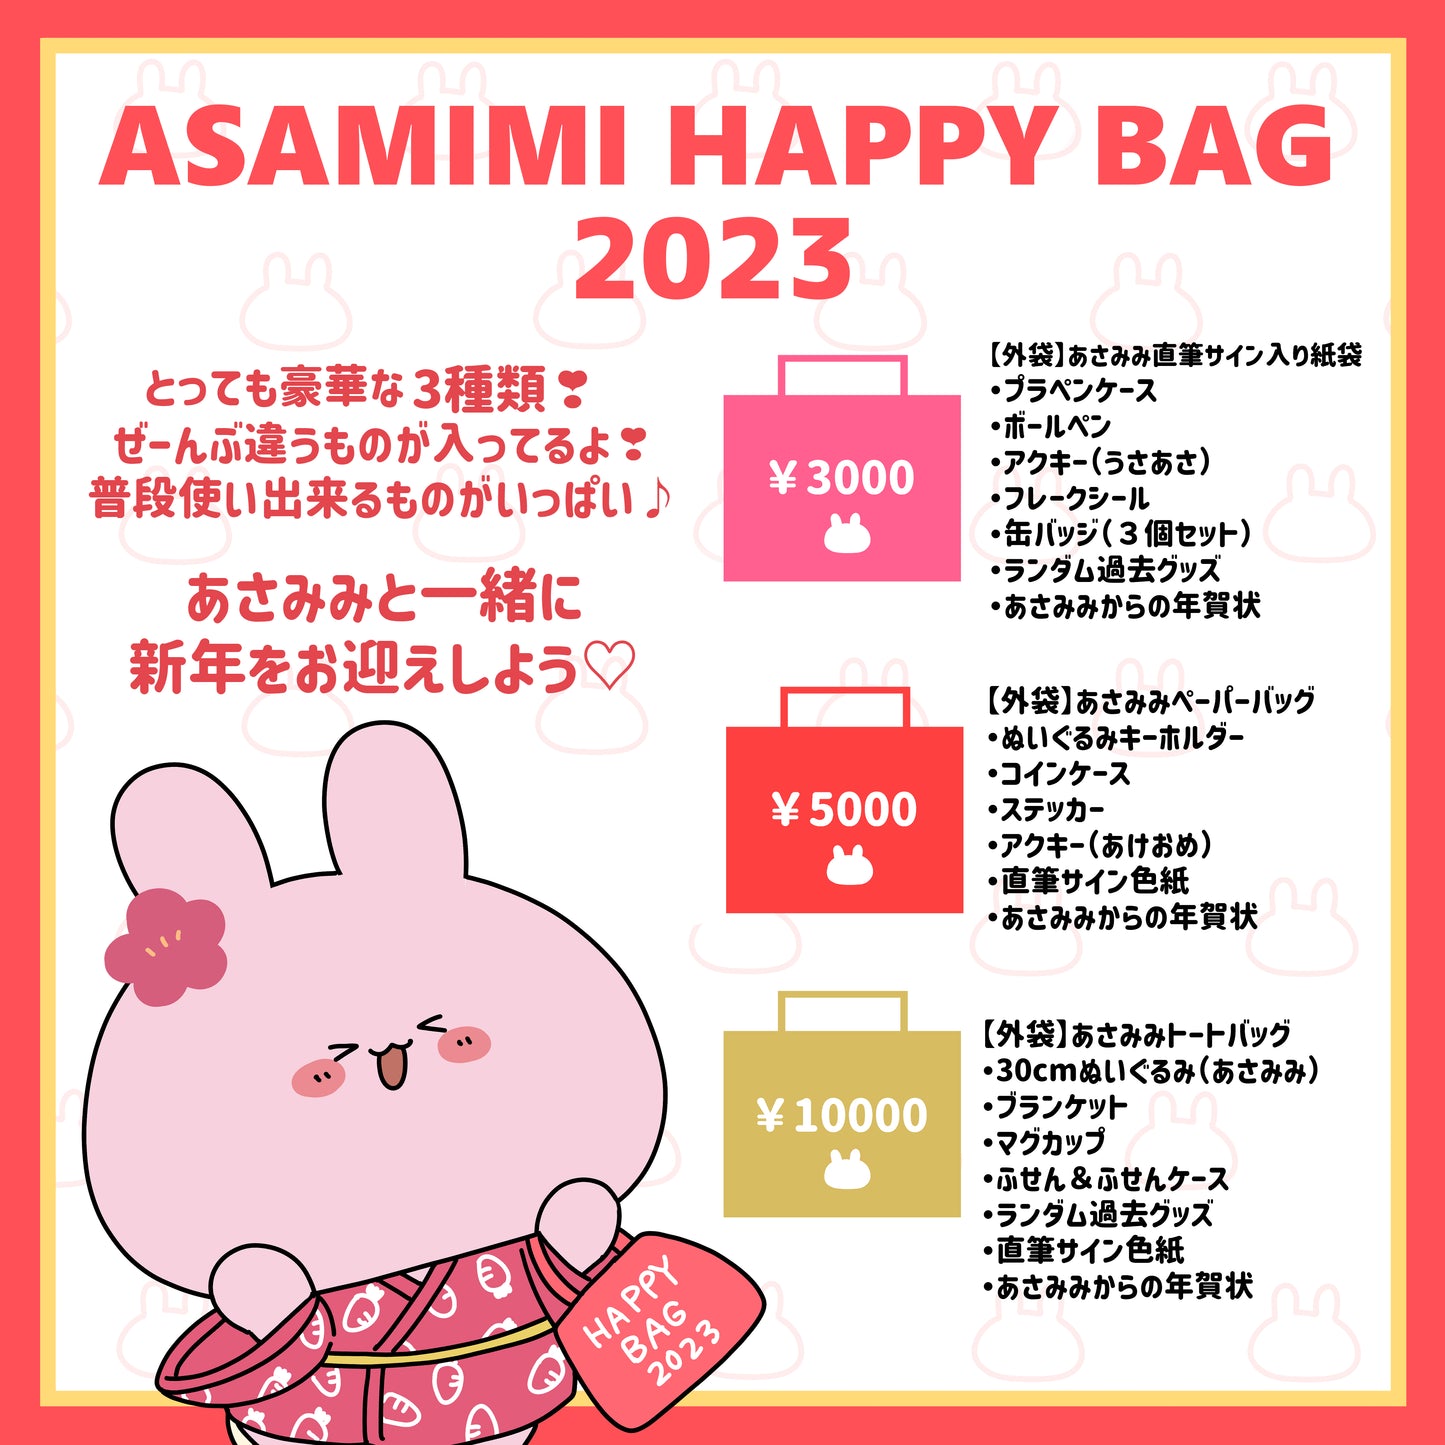 [Asamimi醬] ASAMIMI HAPPY BAG (5,000日圓) [數量有限預購]